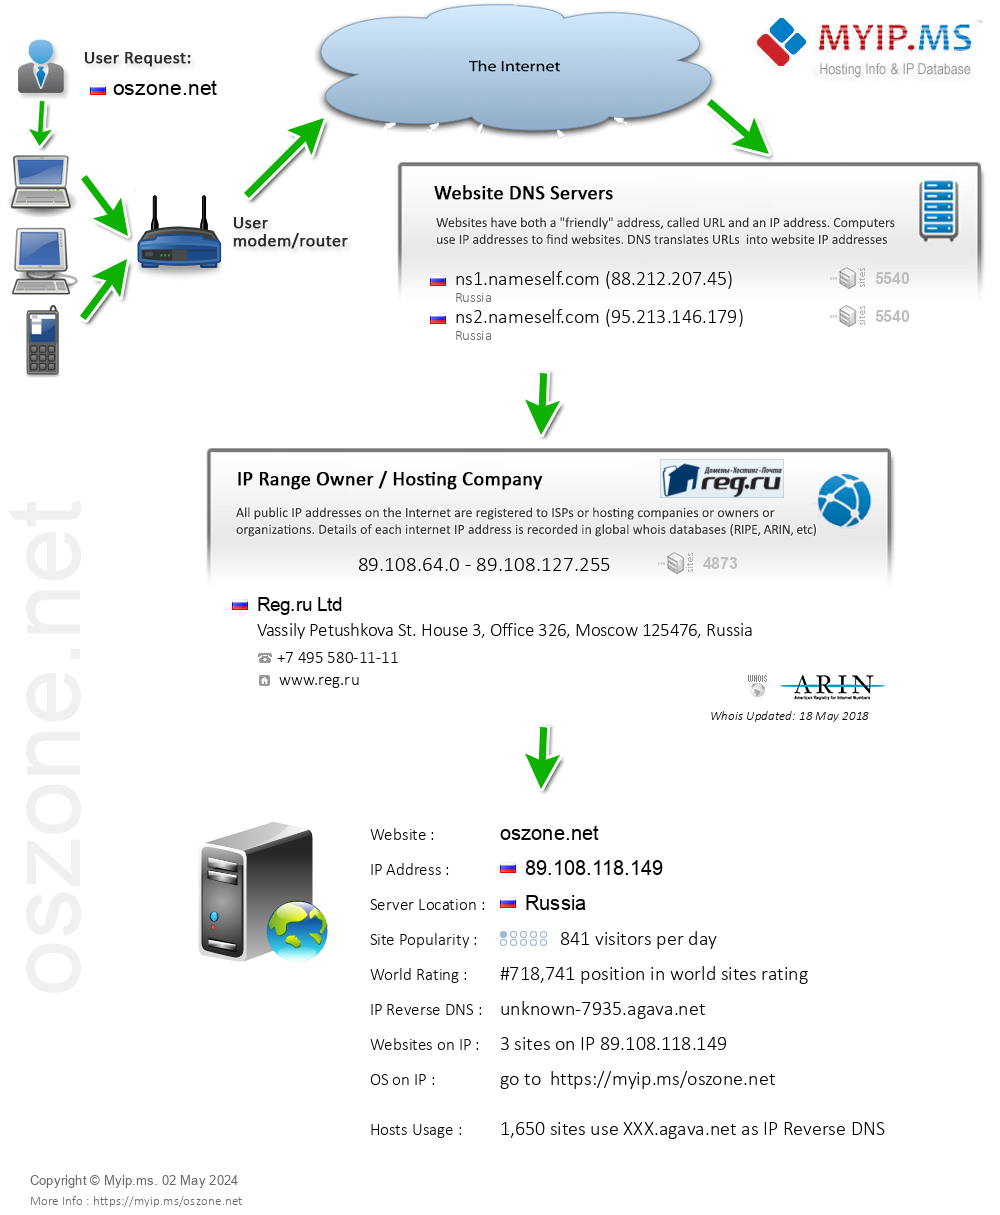 Oszone.net - Website Hosting Visual IP Diagram